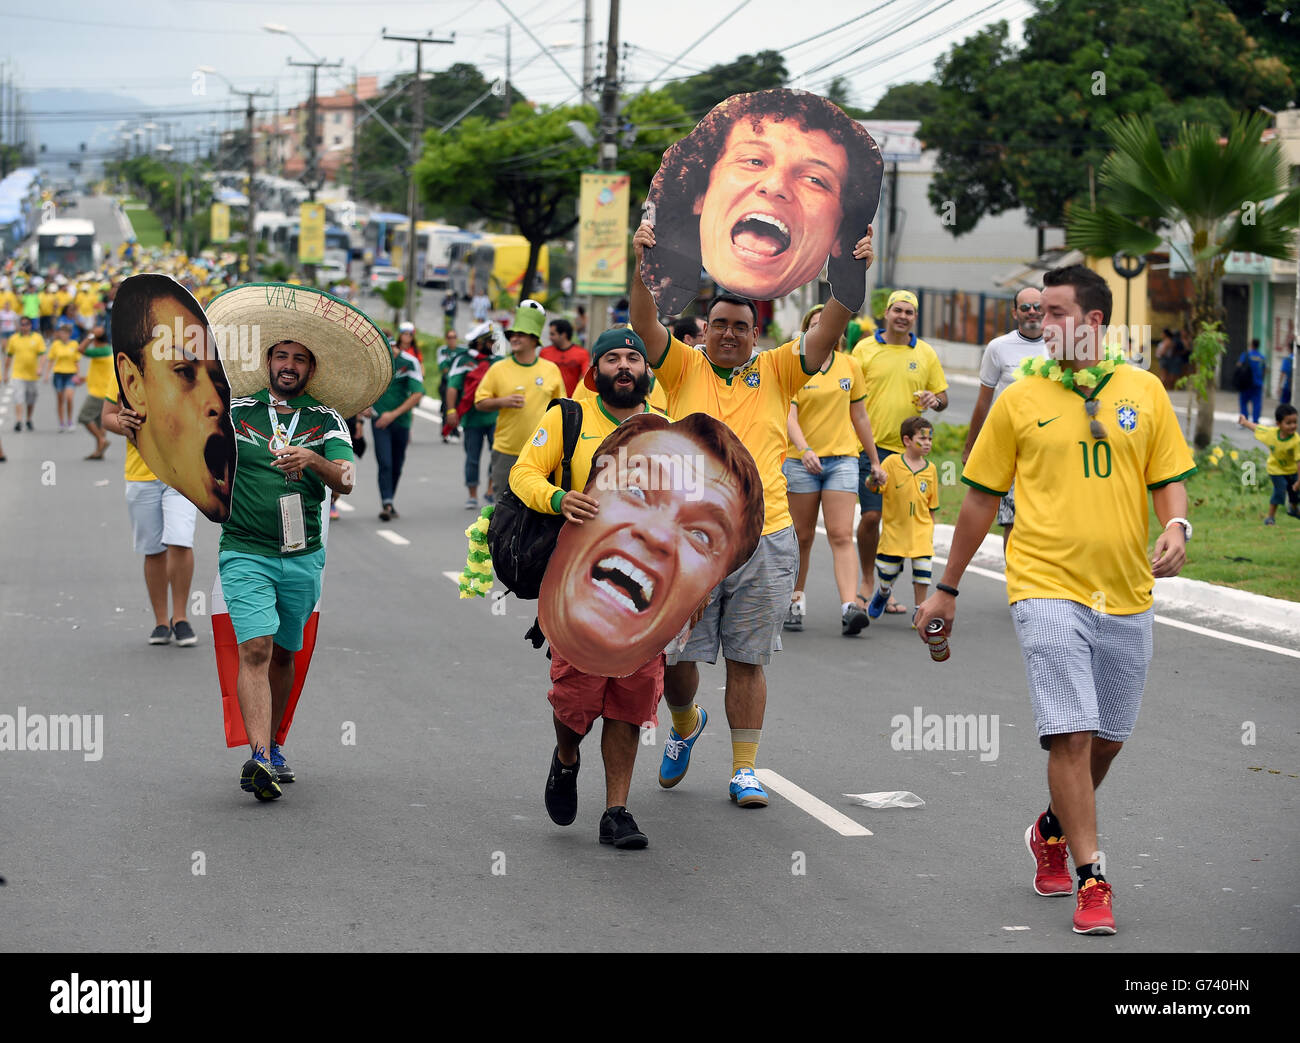 Soccer - FIFA World Cup 2014 - Group A - Brazil v Mexico - Estadio Castelao Stock Photo